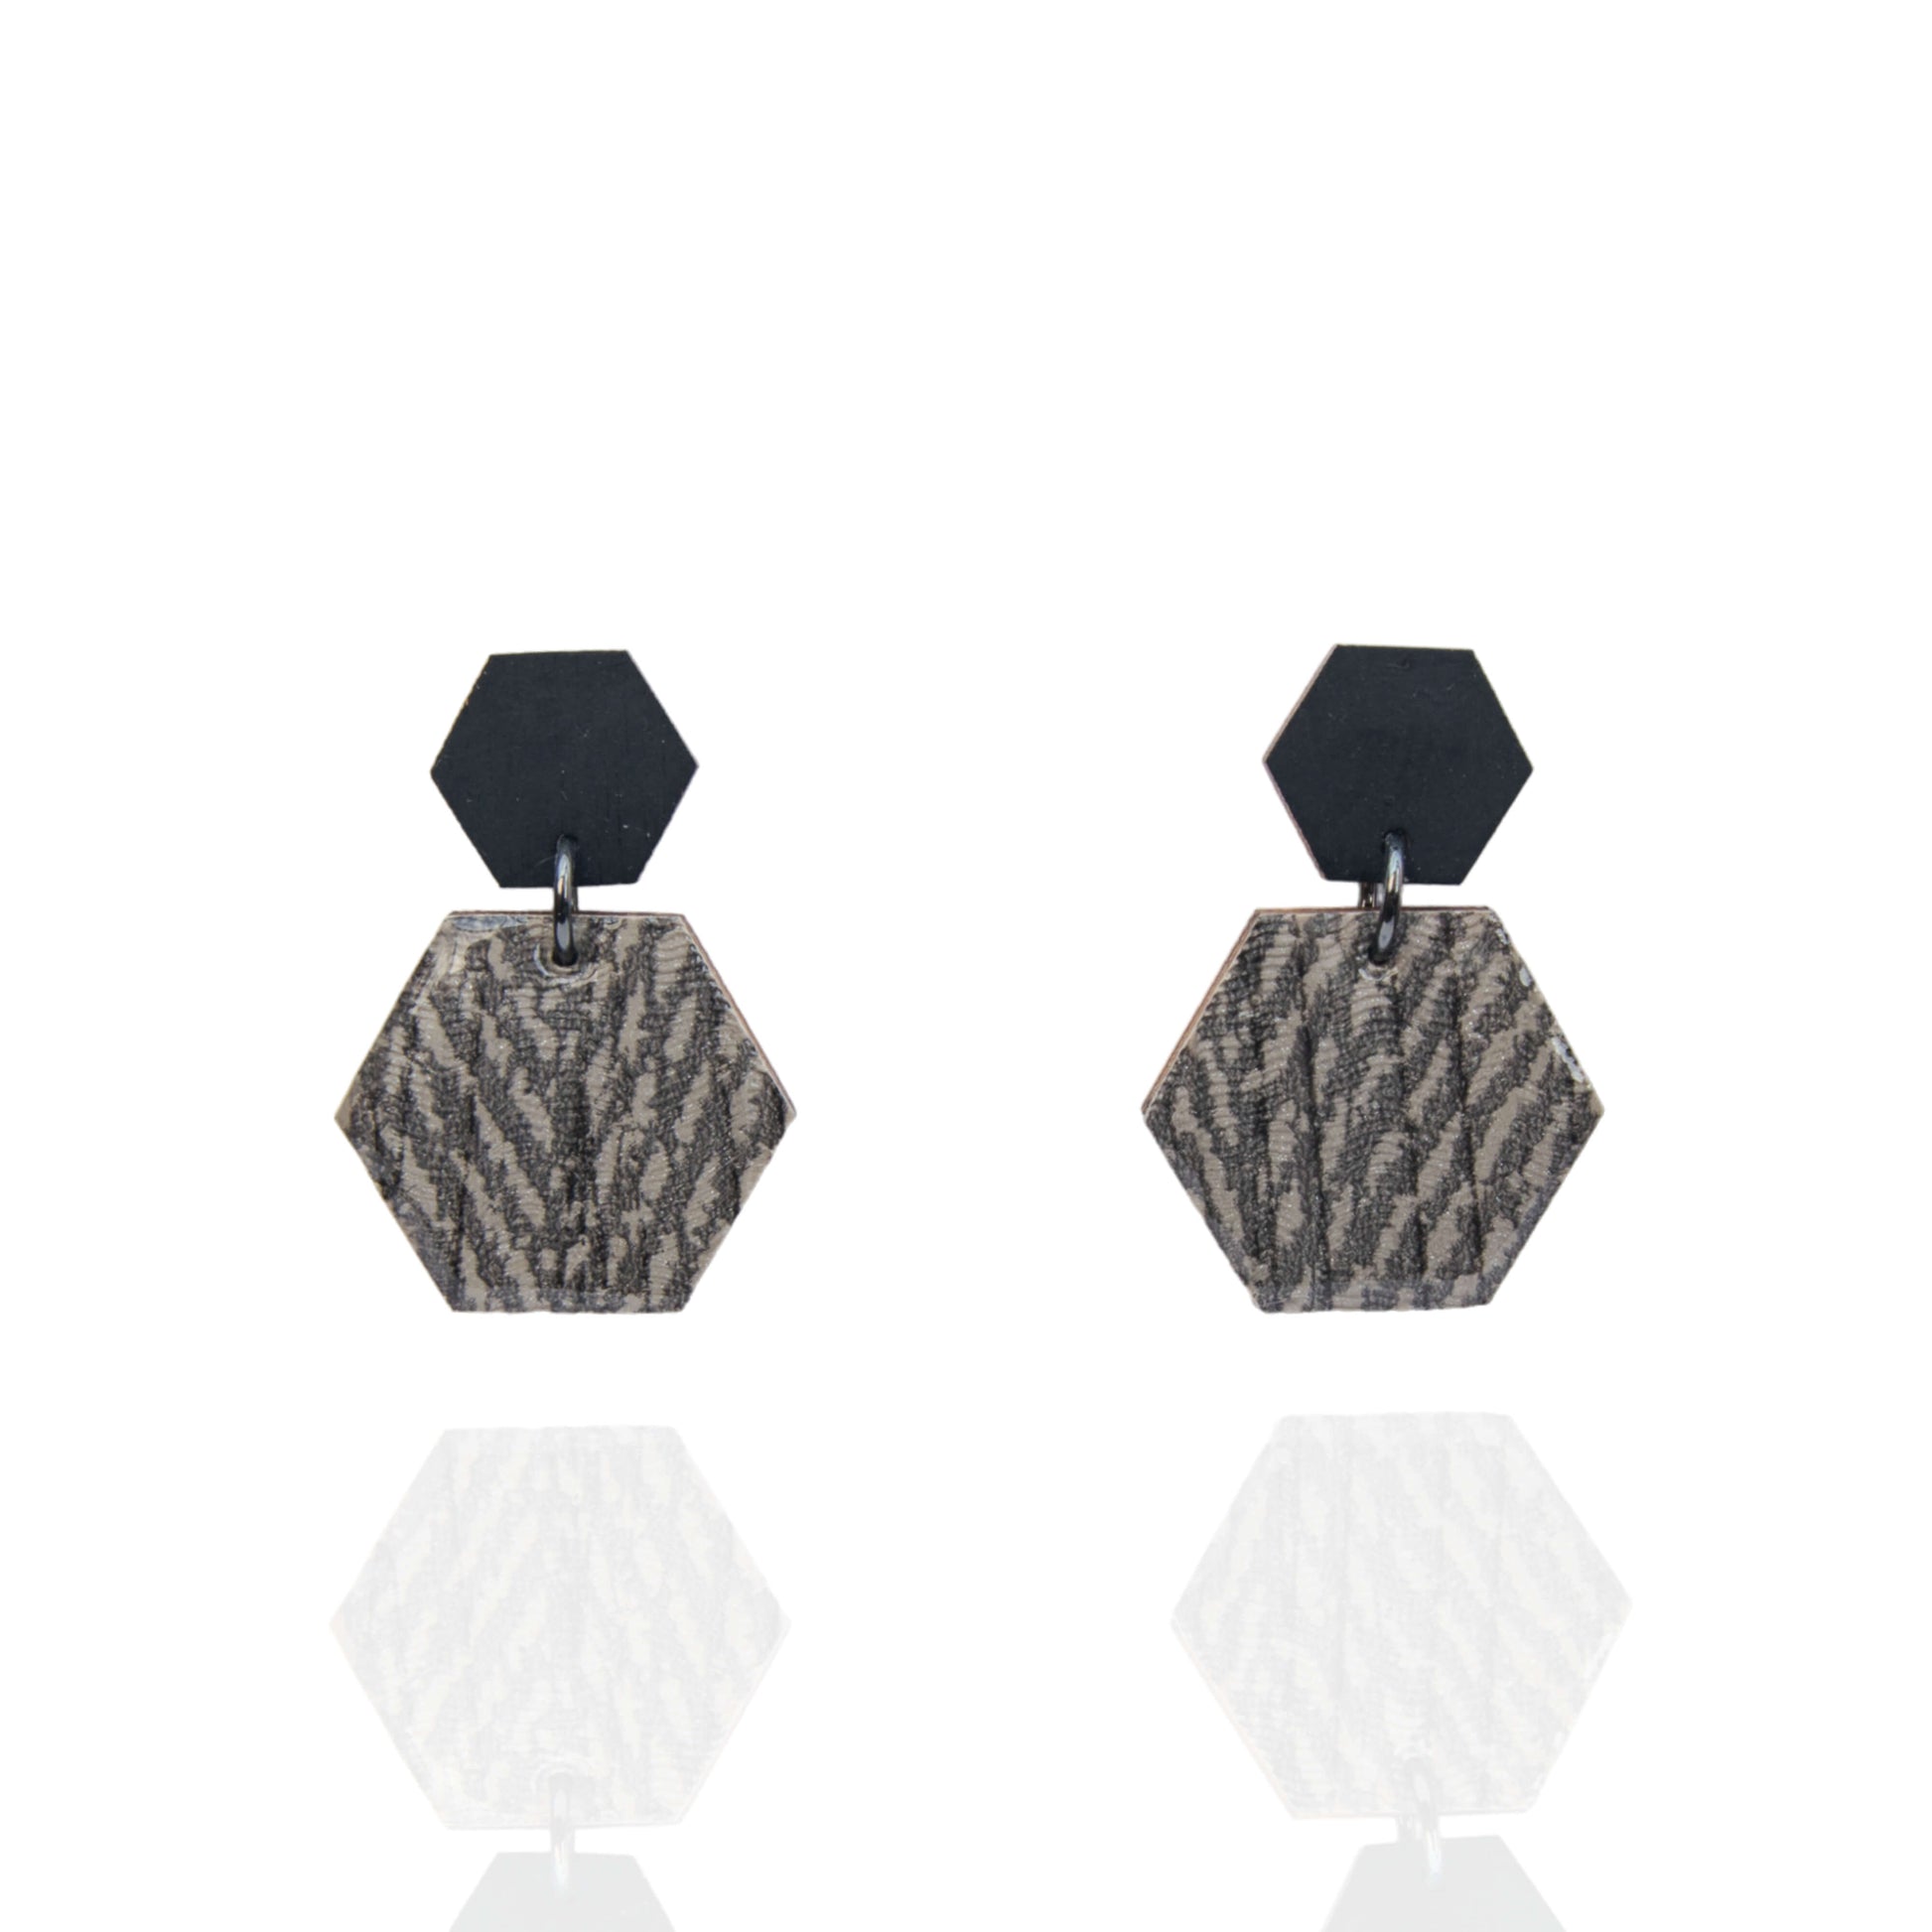 Cara - Hexagon vormige houten oorbellen met trendy print - Oorbellen - Keelin Design